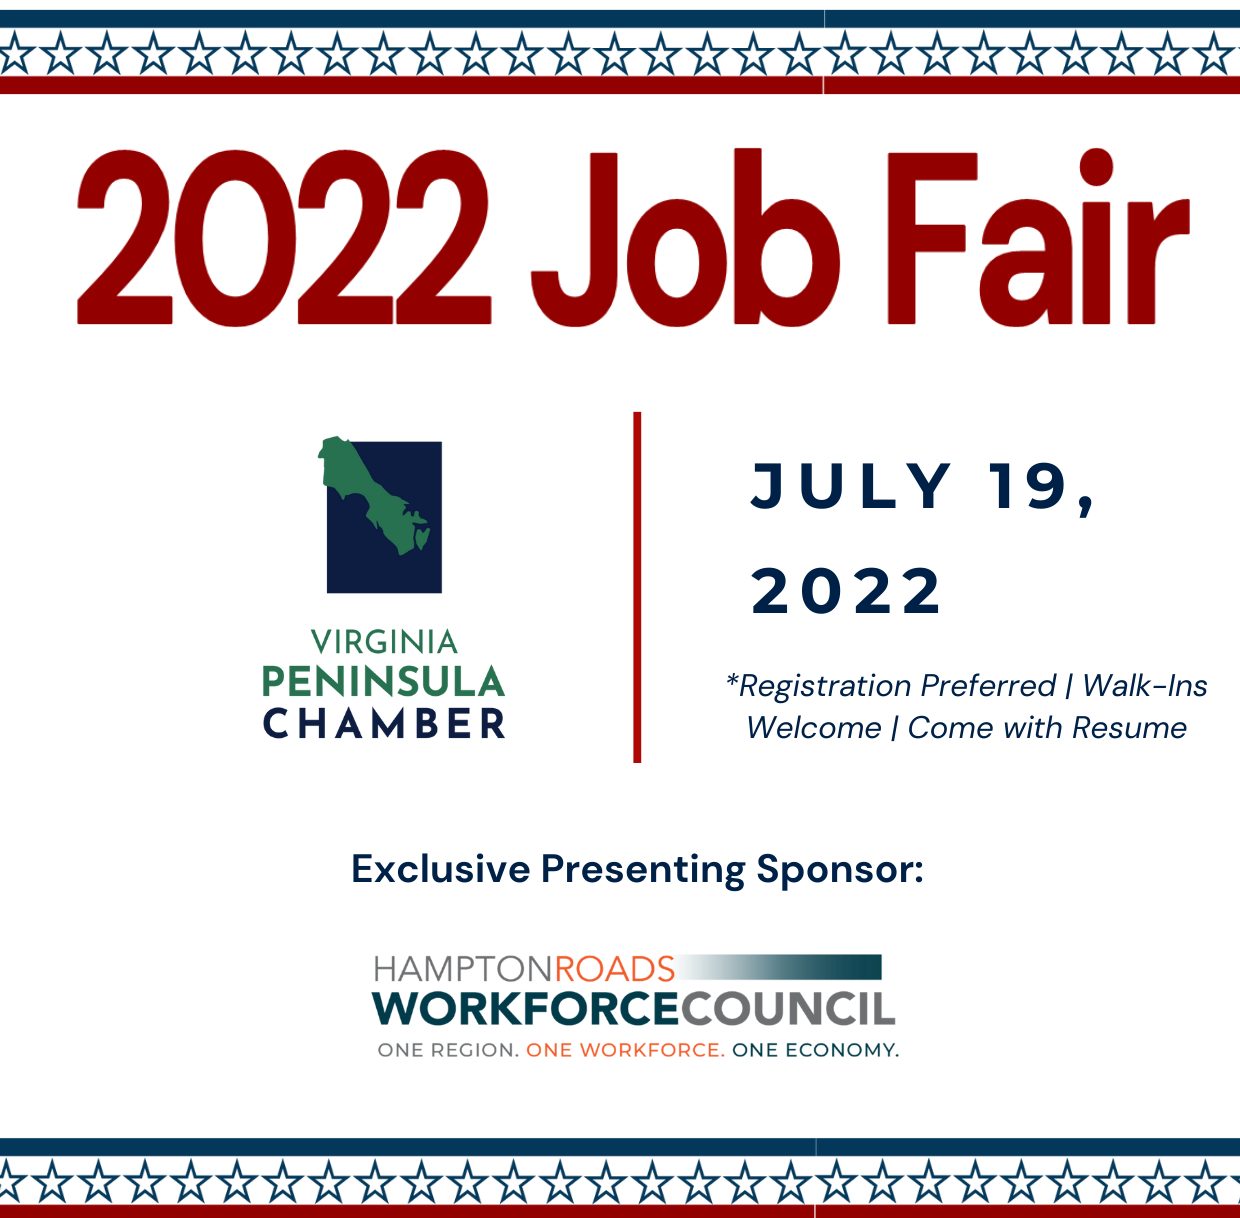 Press Release 2022 Job Fair Virginia Peninsula Chamber